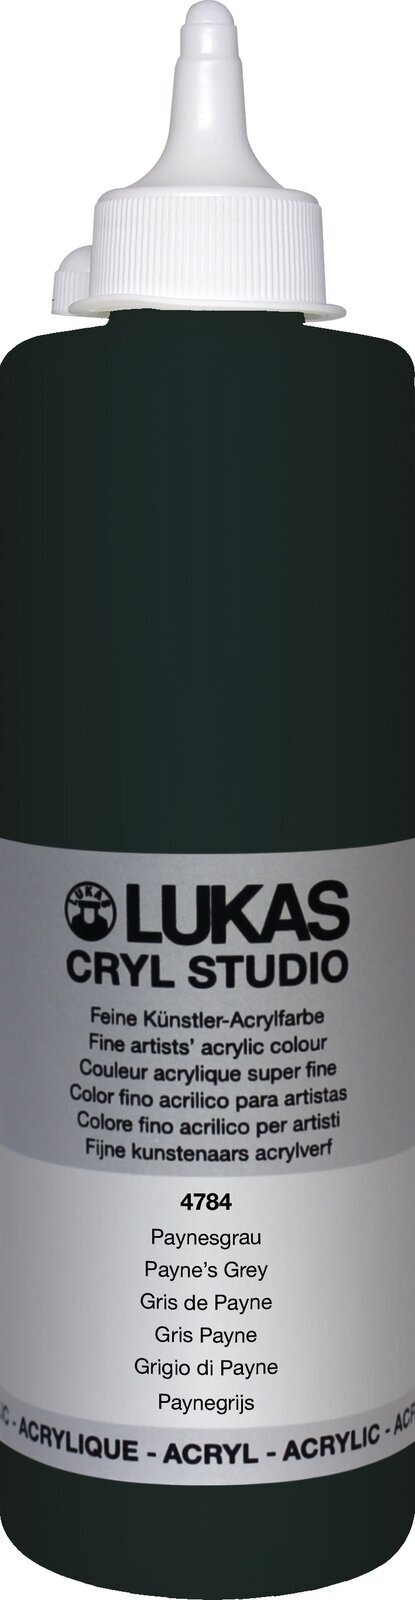 Akrylová barva Lukas Cryl Studio Akrylová barva 500 ml Payne's Grey